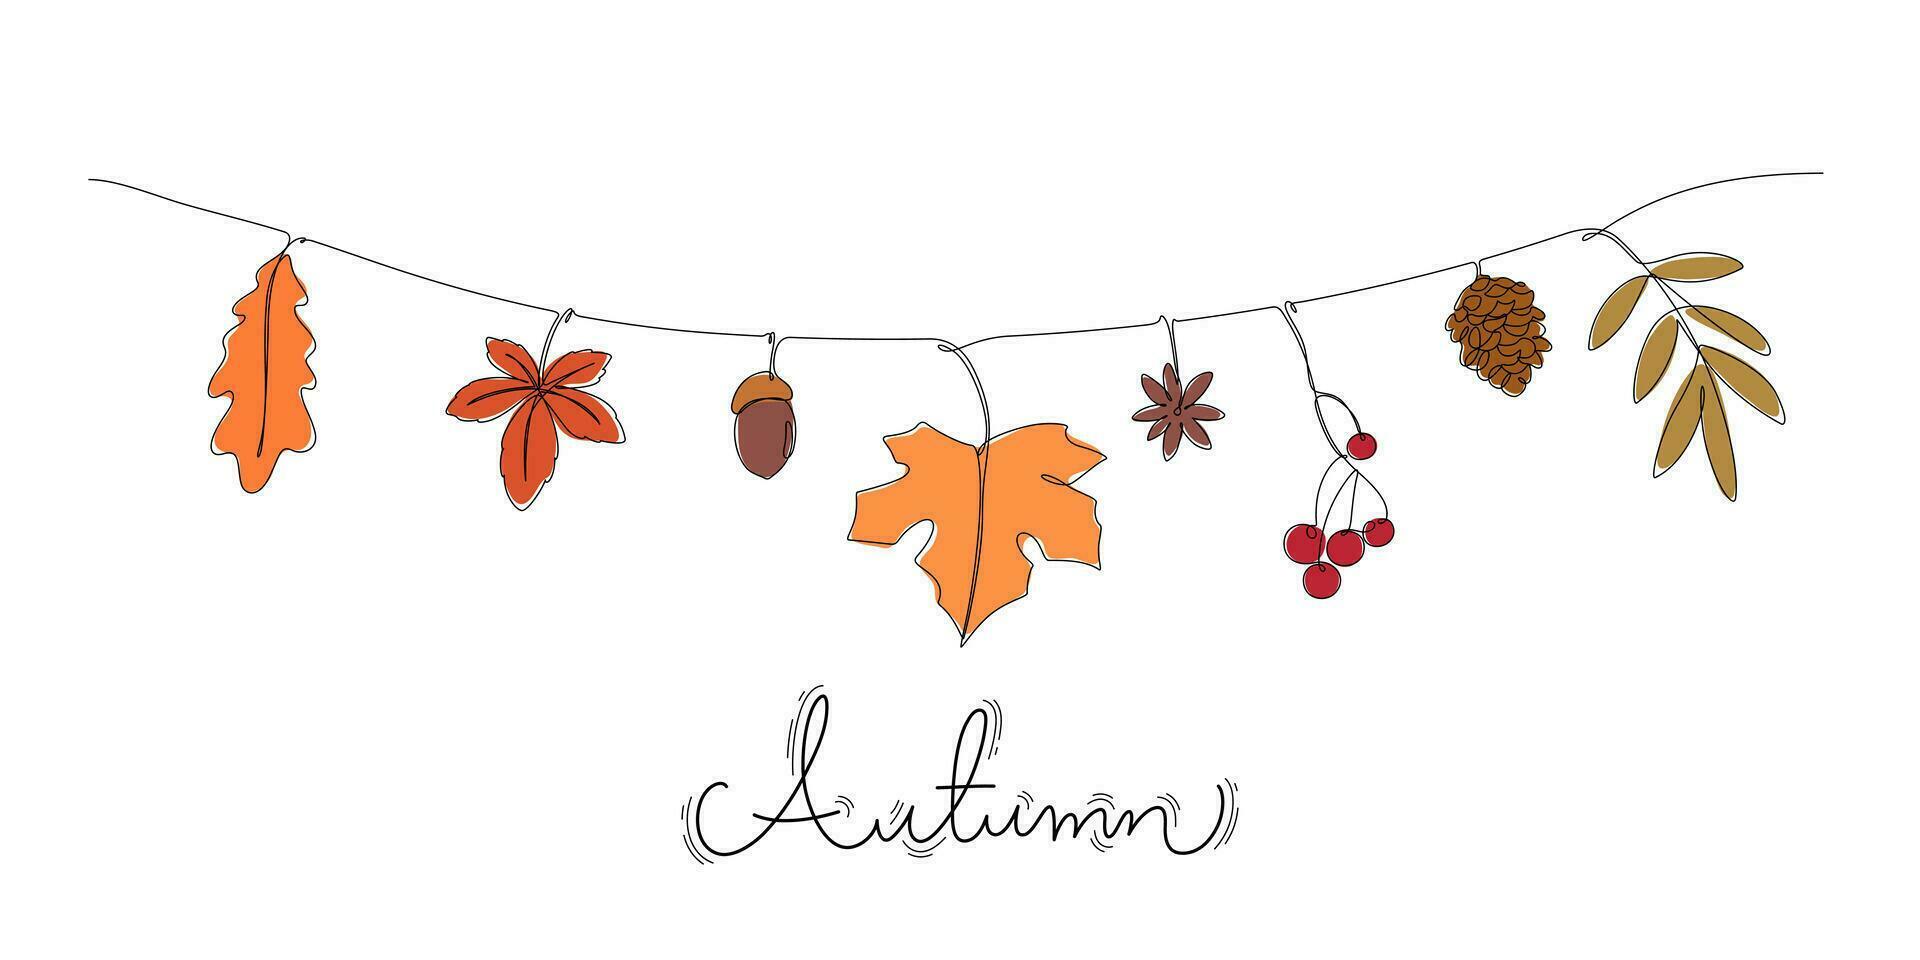 doorlopend lijn tekening gekleurde van herfst bladeren muur versierd hangende draad vector